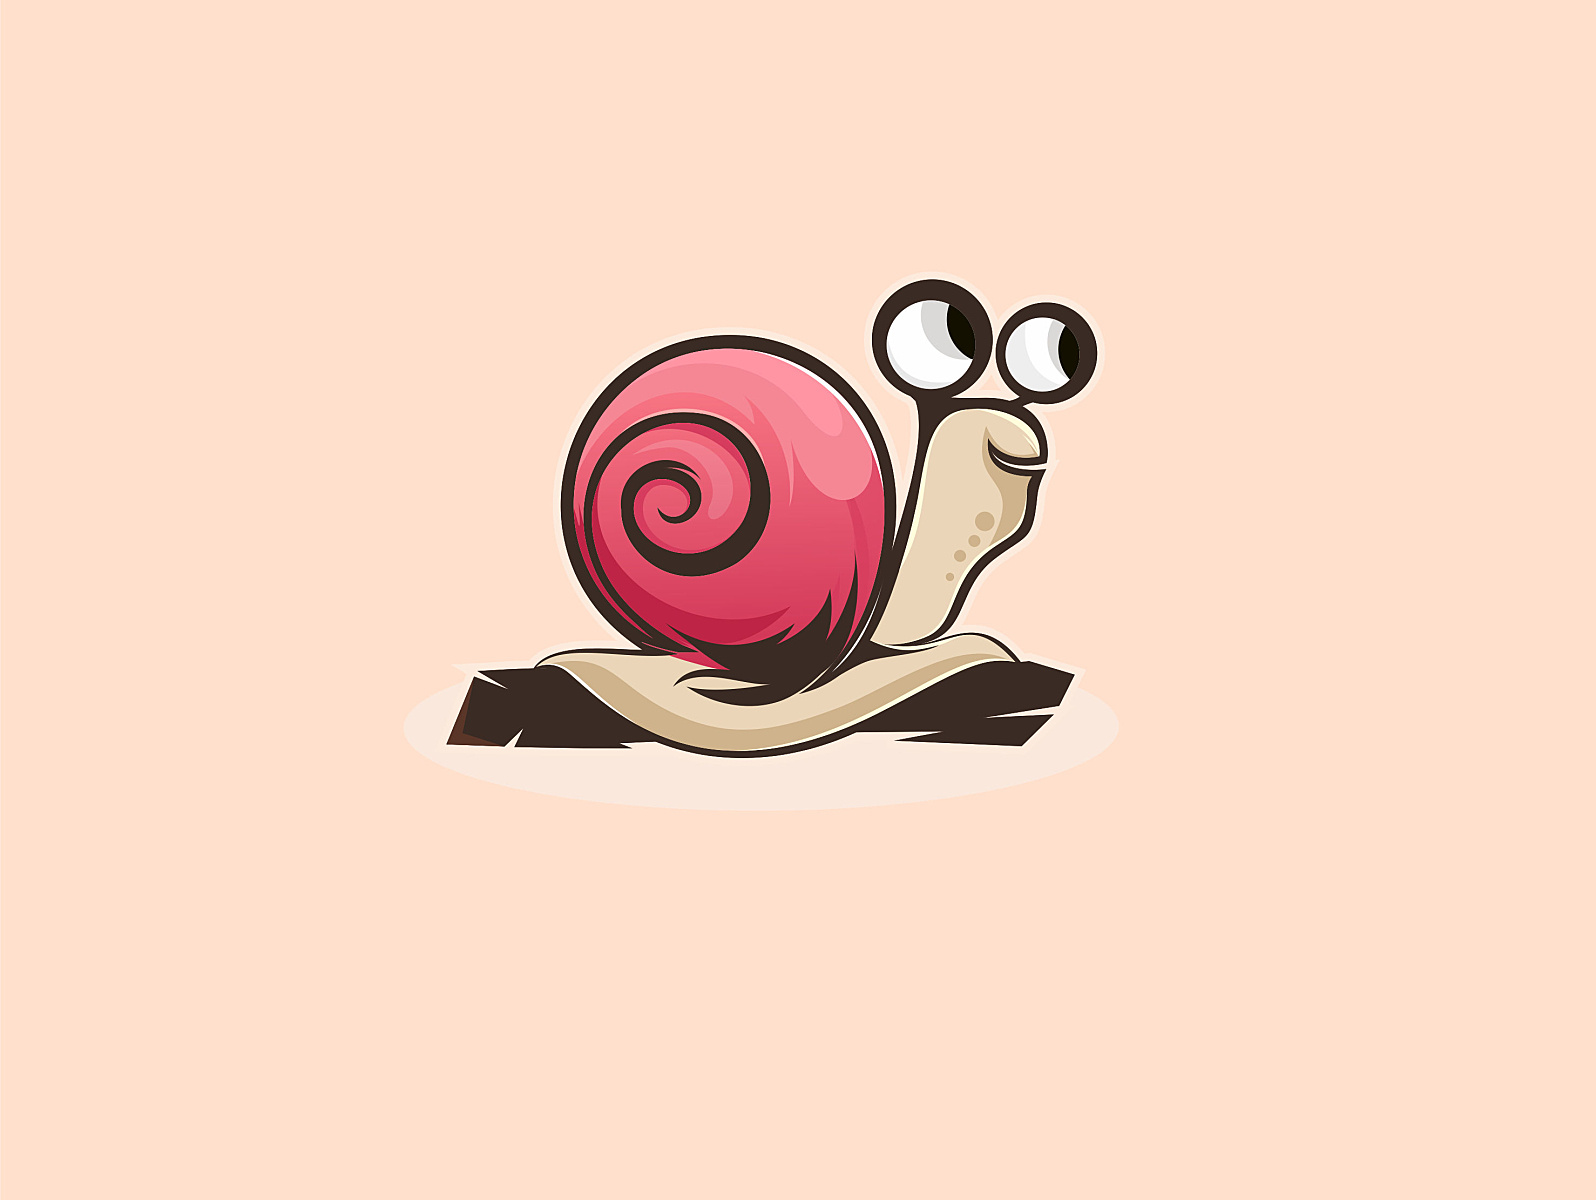 Snail Logo by valdisme on Dribbble.